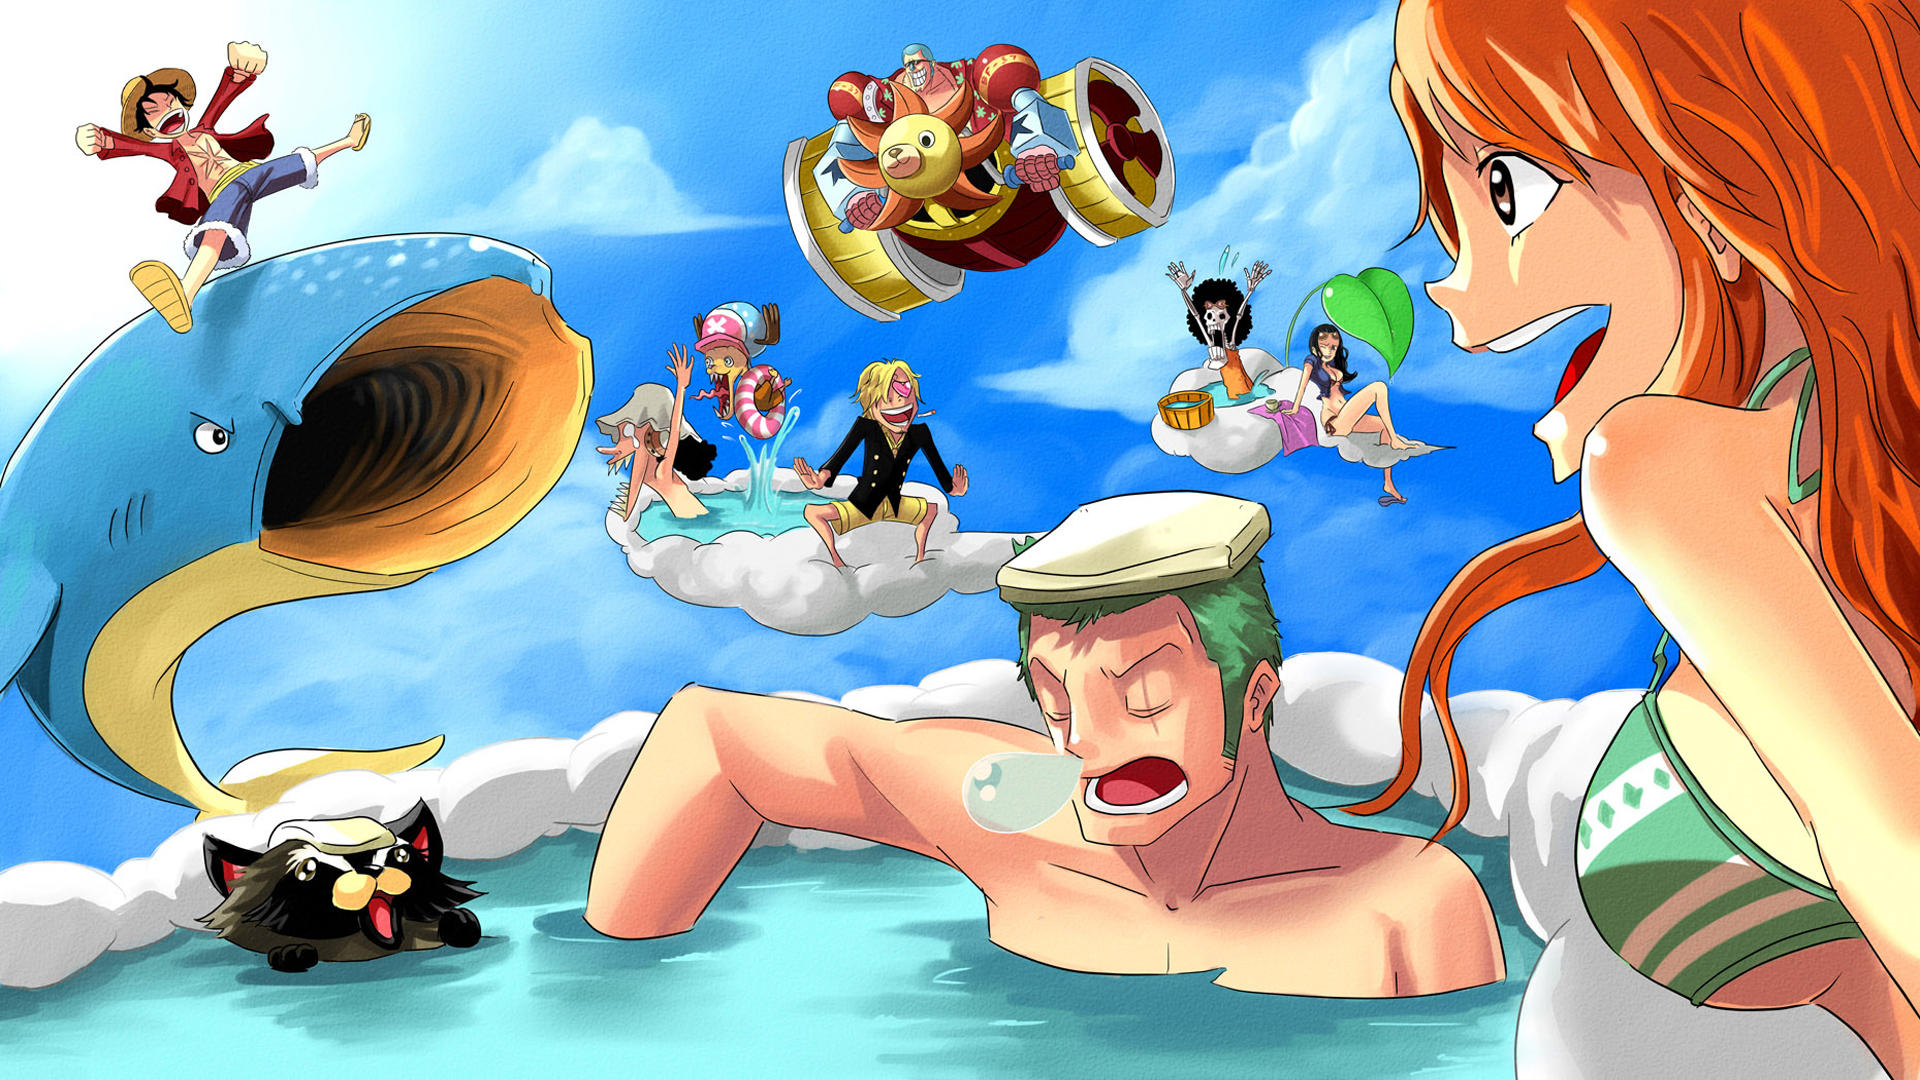 Nếu bạn yêu thích One Piece, bạn không thể bỏ qua hình ảnh Monkey D. Luffy - người hùng dũng cảm và đầy thú vị của chúng ta. Xem hình ảnh, bạn sẽ cảm nhận được sự thông minh và lòng dũng cảm của Luffy trong cuộc hành trình chinh phục Đại hải trình. Hãy xem ngay để tìm hiểu thêm về vị hoàng tử hải tặc này!